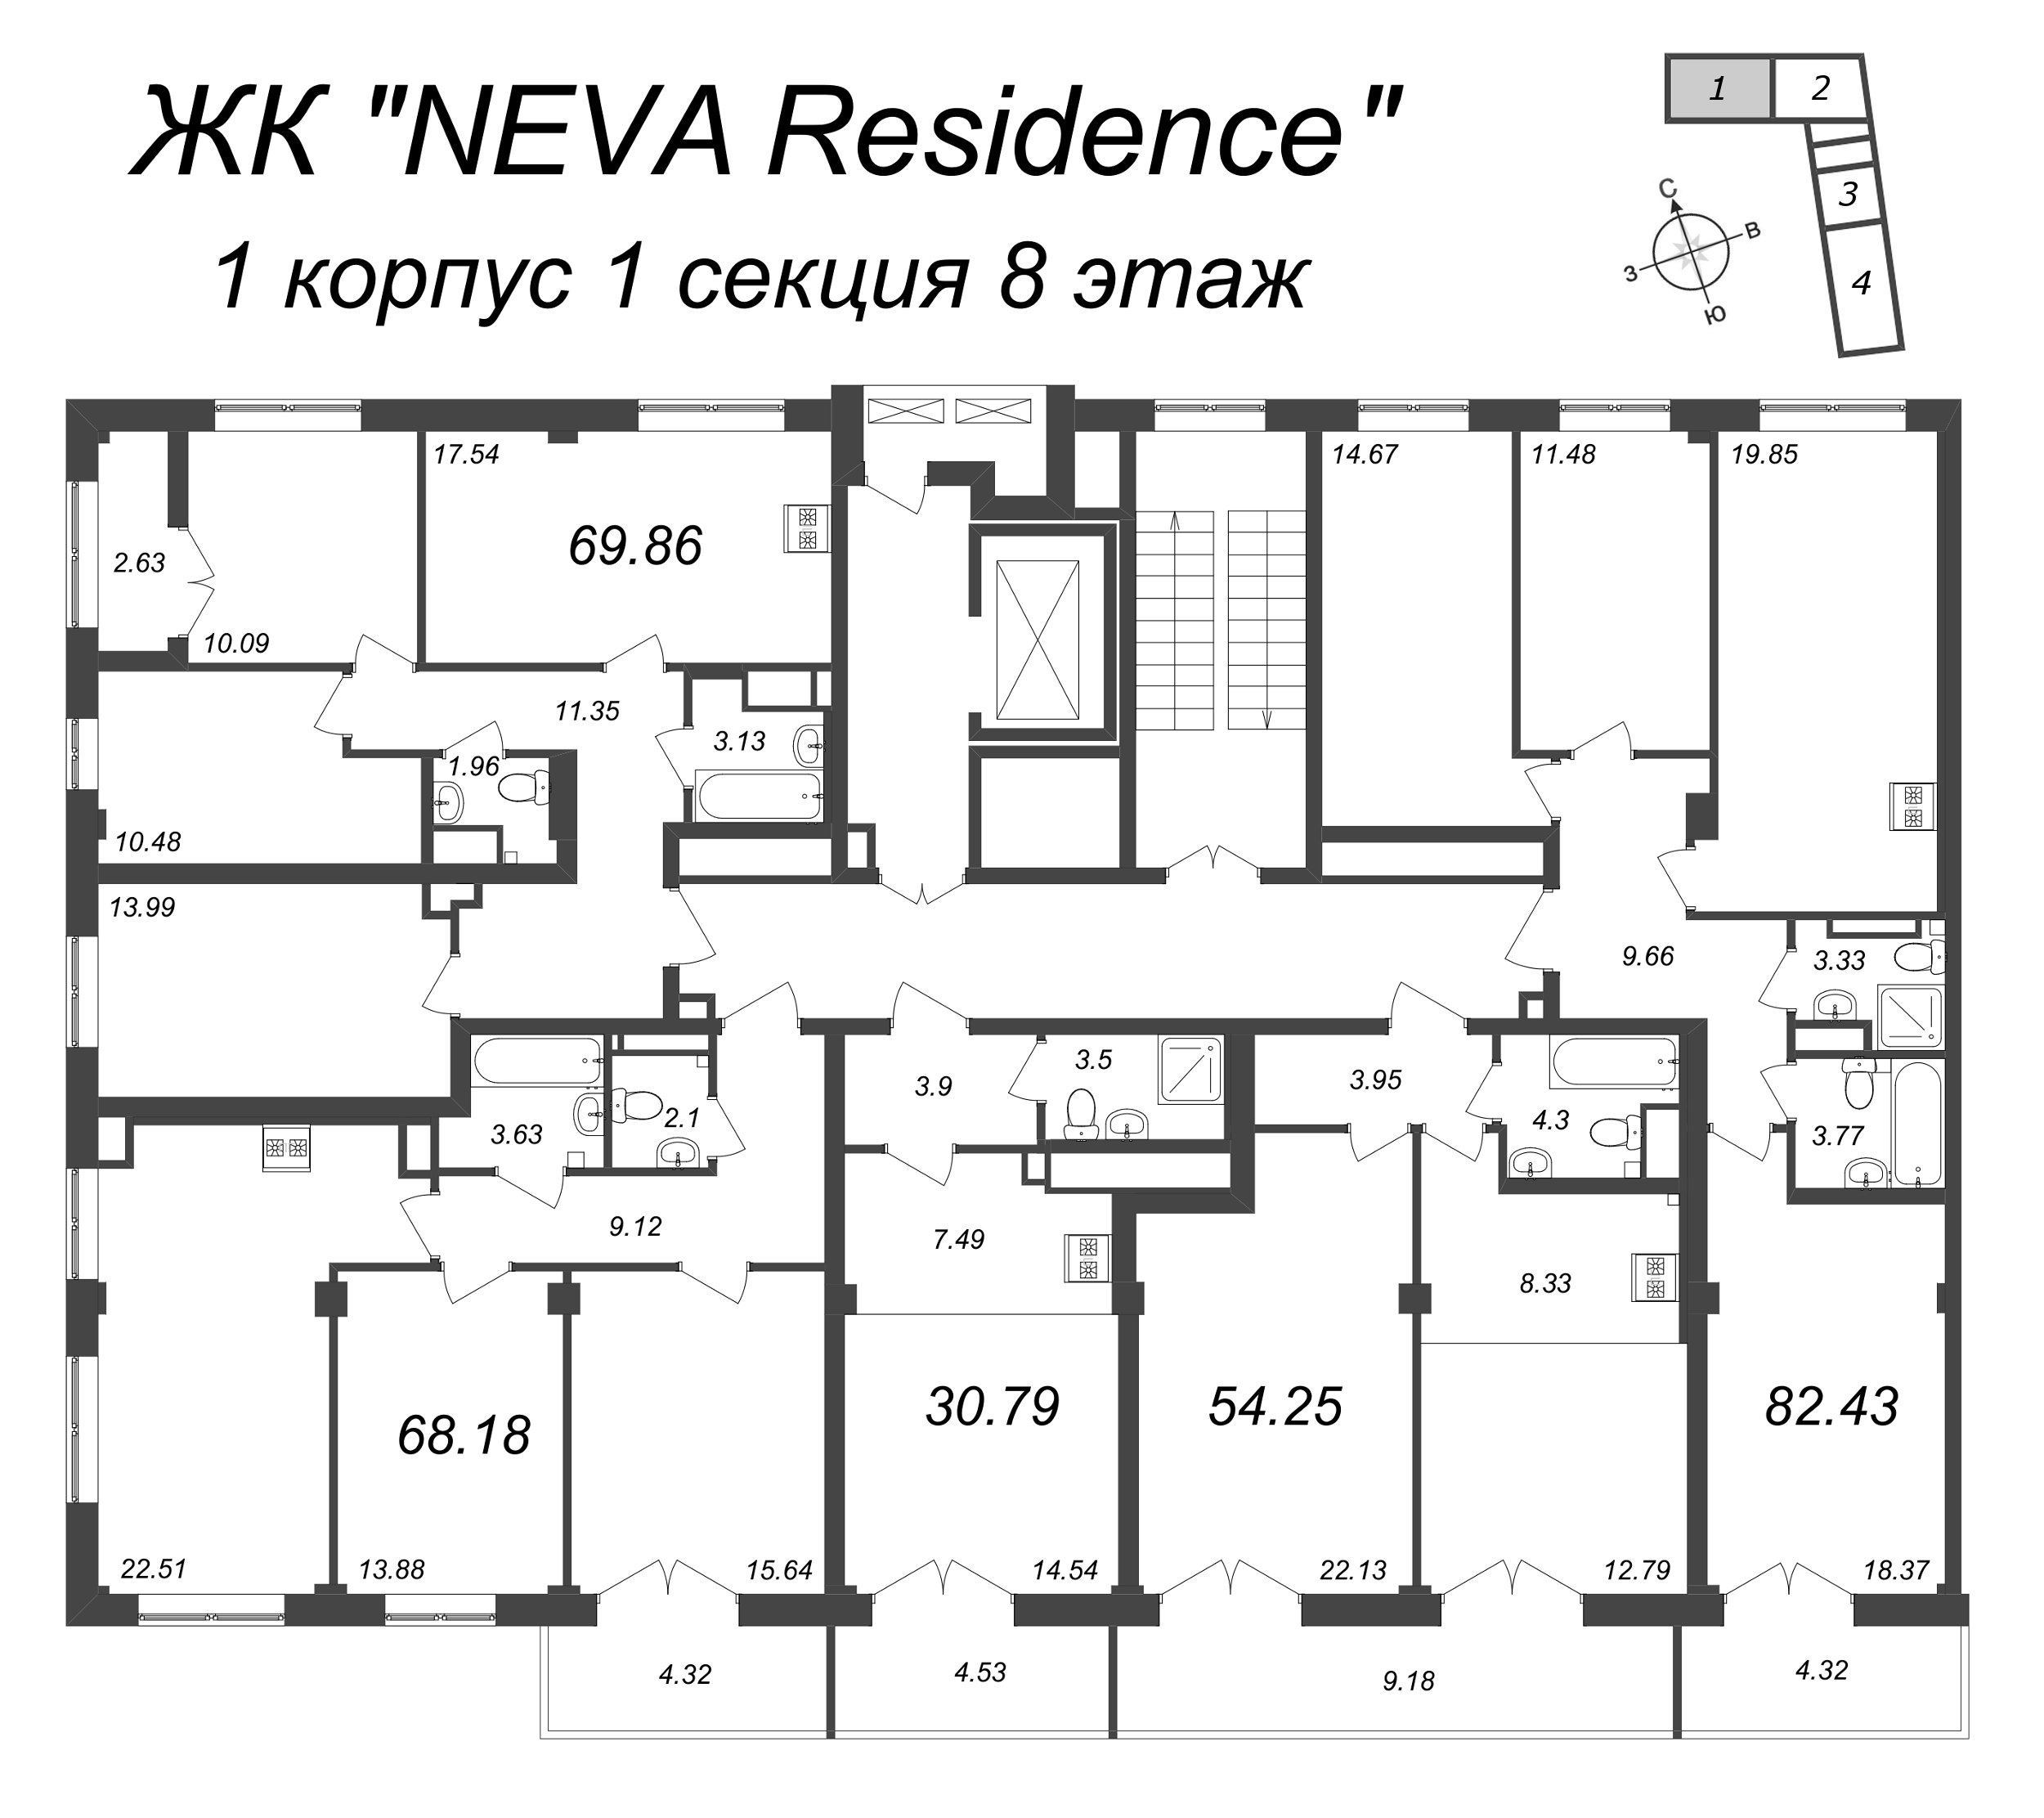 Квартира-студия, 30.79 м² в ЖК "Neva Residence" - планировка этажа